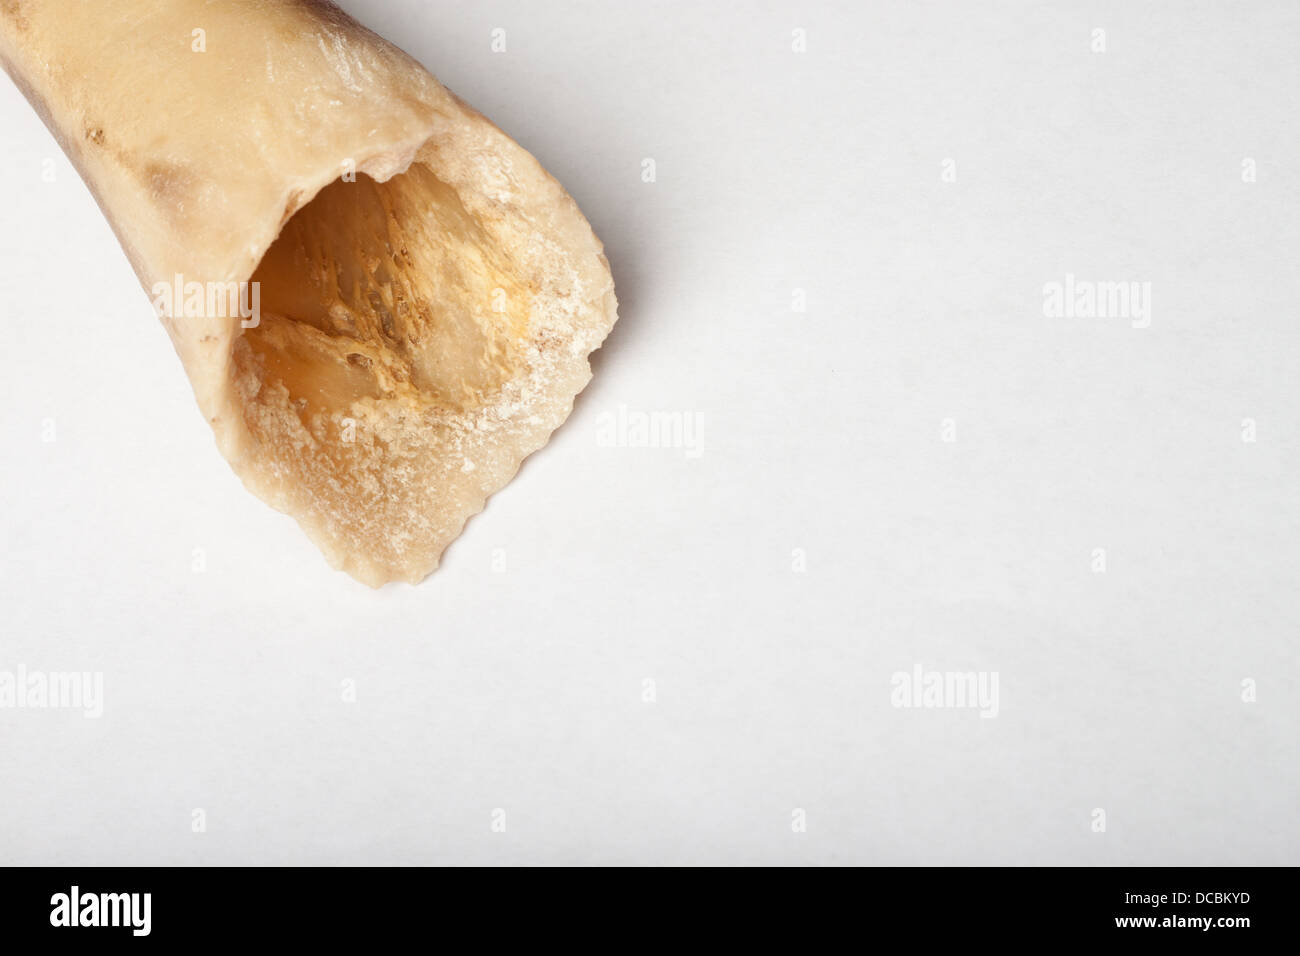 Hollow dog bone against white background Stock Photo